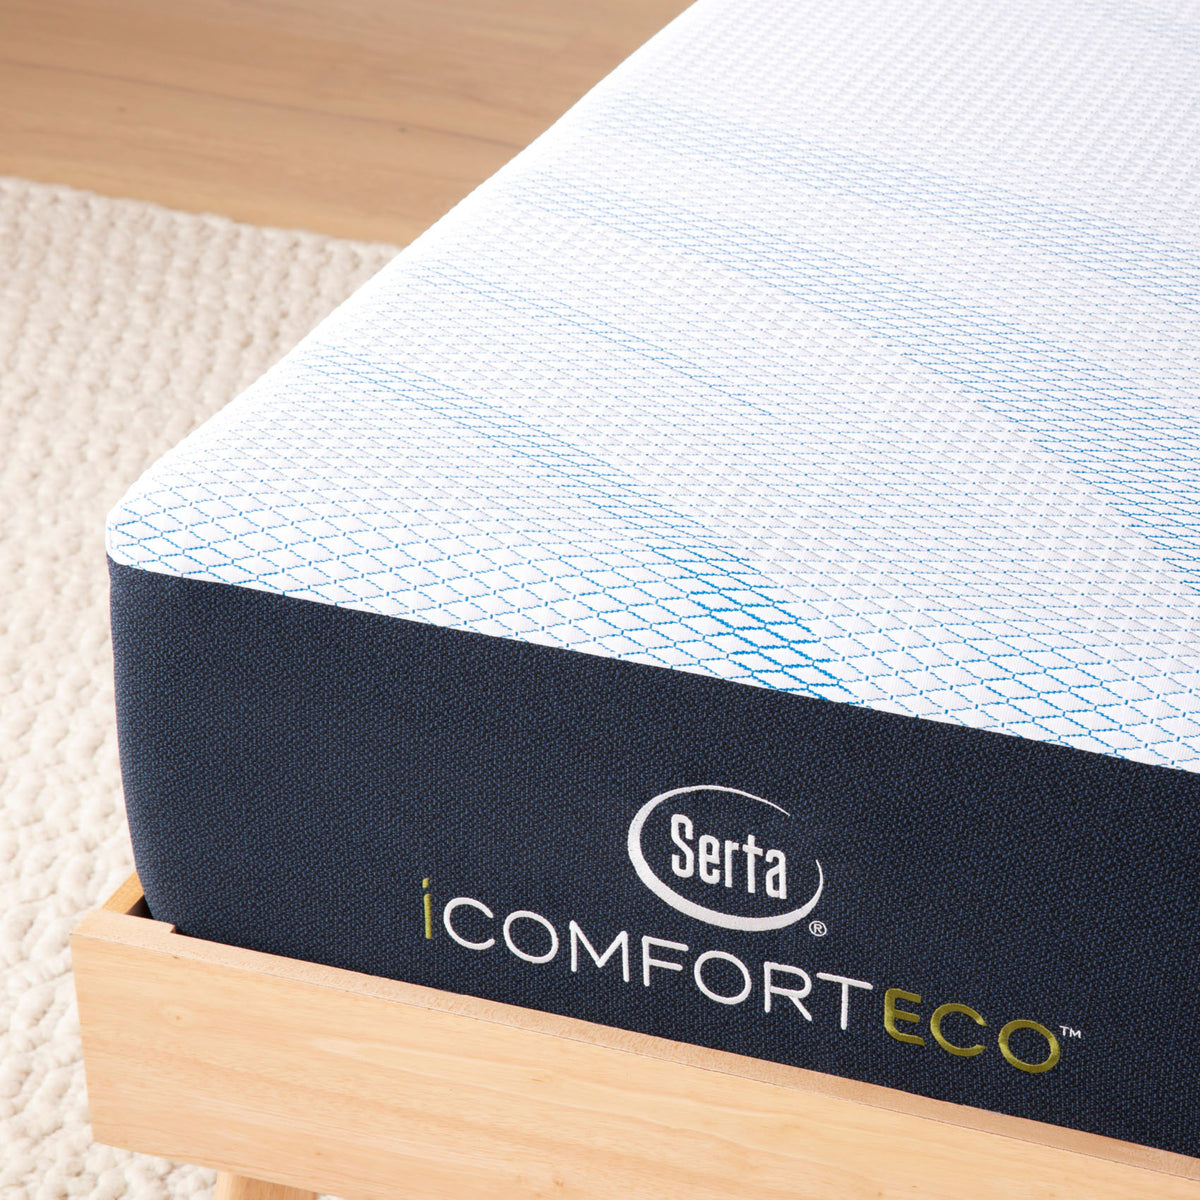 Serta iComfort ECO F10 Medium Firm Mattress - MJM Furniture